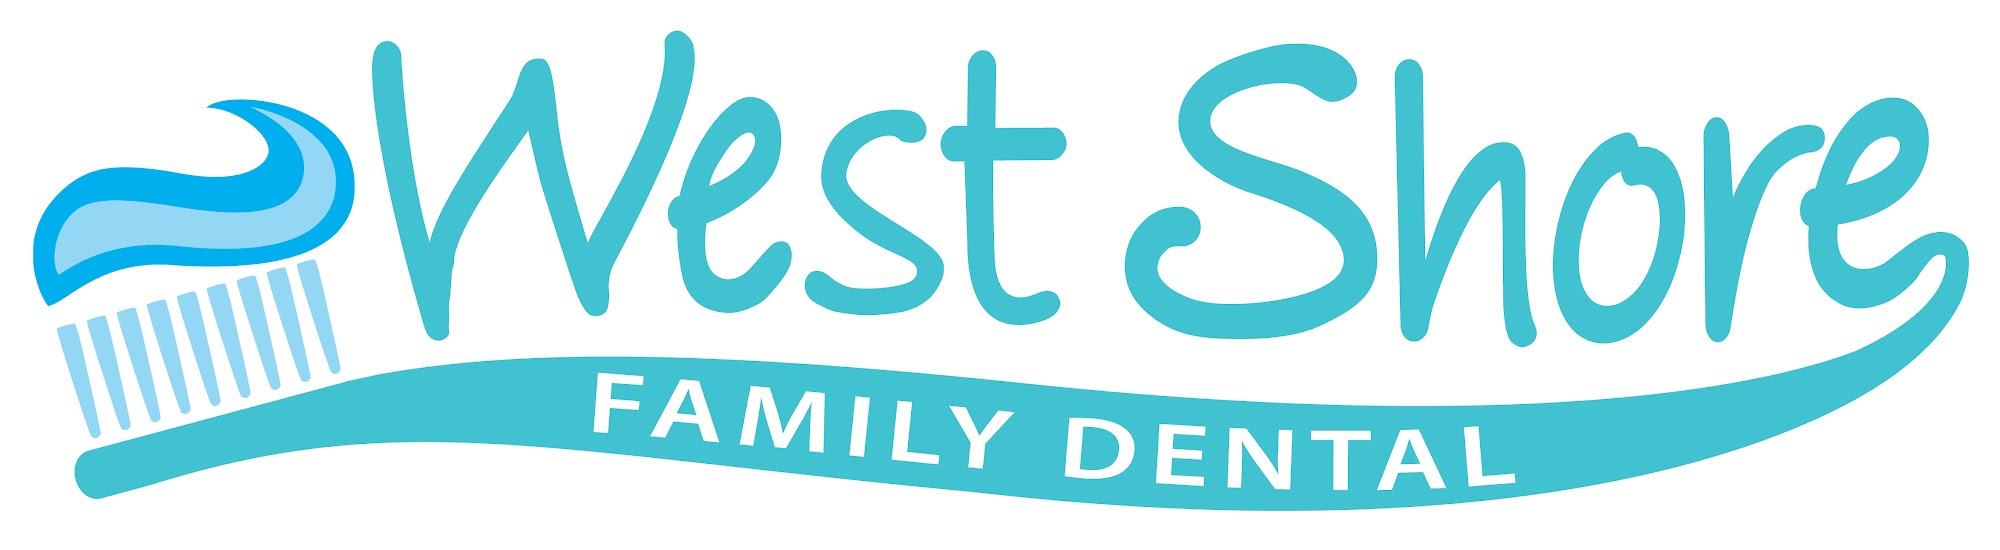 West Shore Family Dental